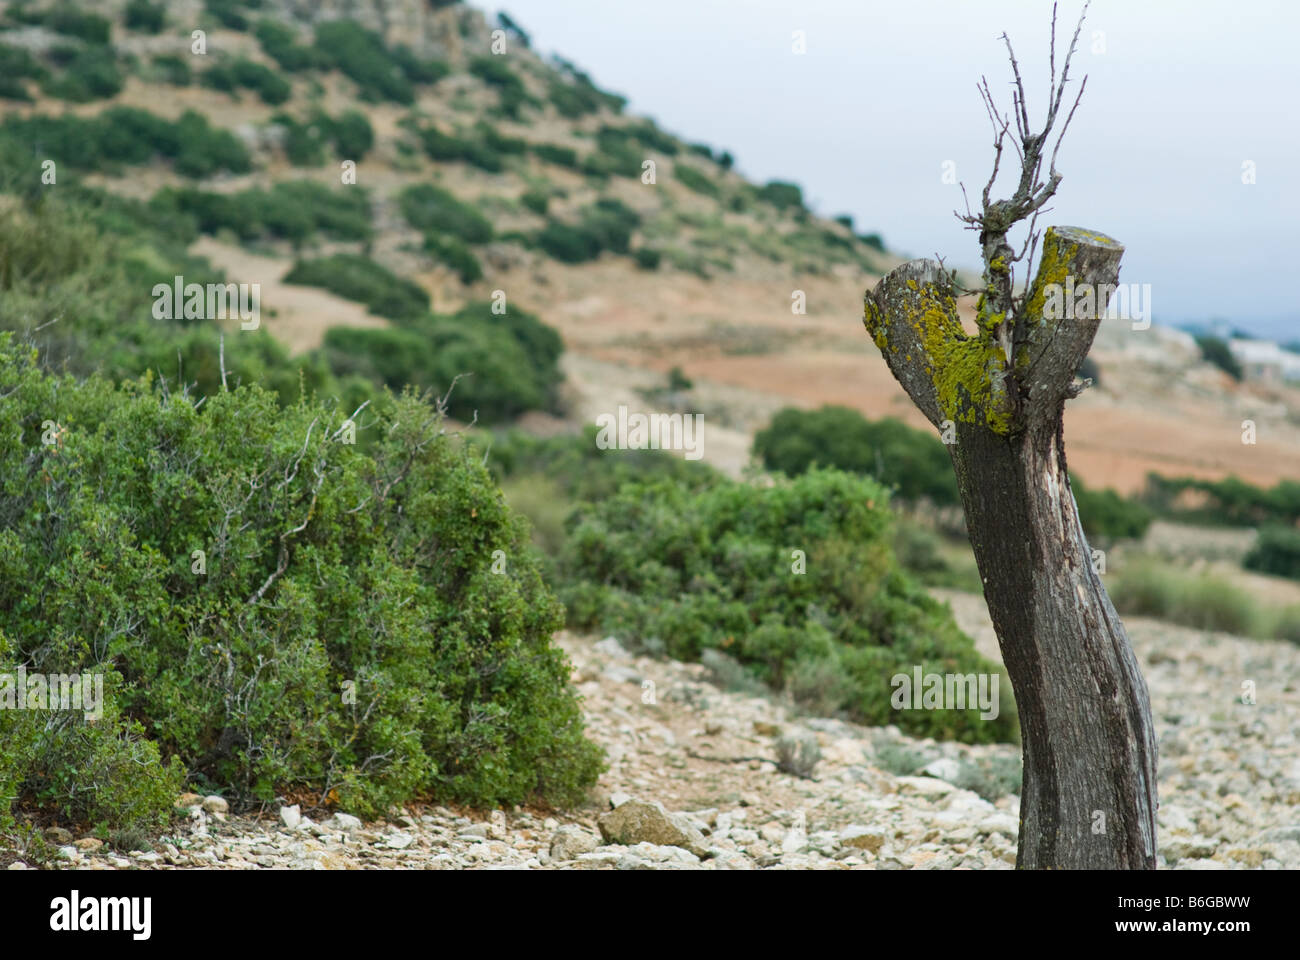 Landscape of tree stump in Almansa, province of Albacete, in the Castilla la Mancha region, Spain, Europe Stock Photo